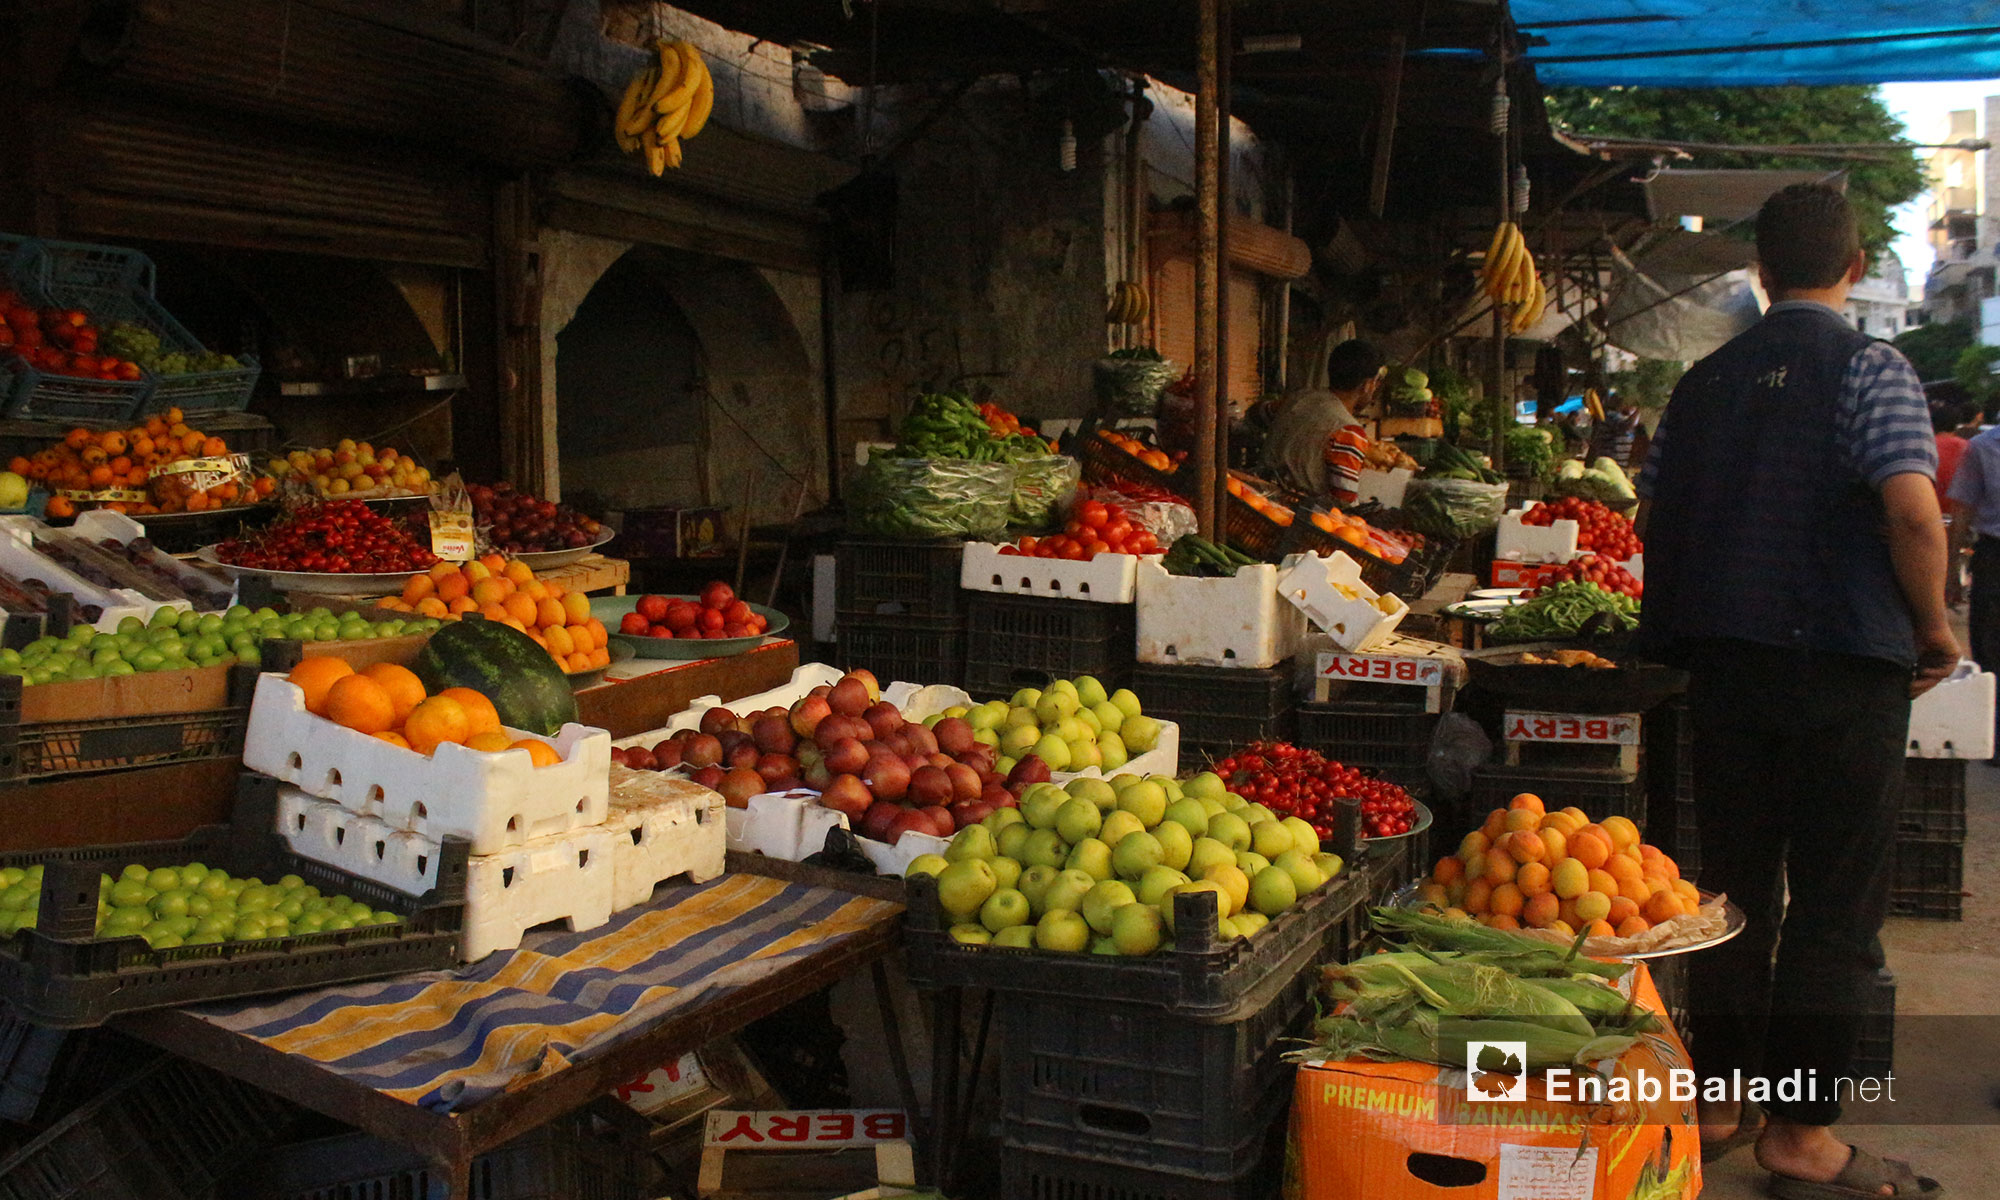 أنواع مختلفة من الفاكهة في الأسواق بمدينة إدلب أول أيام شهر رمضان المبارك - 27 أيار 2017 (عنب بلدي)